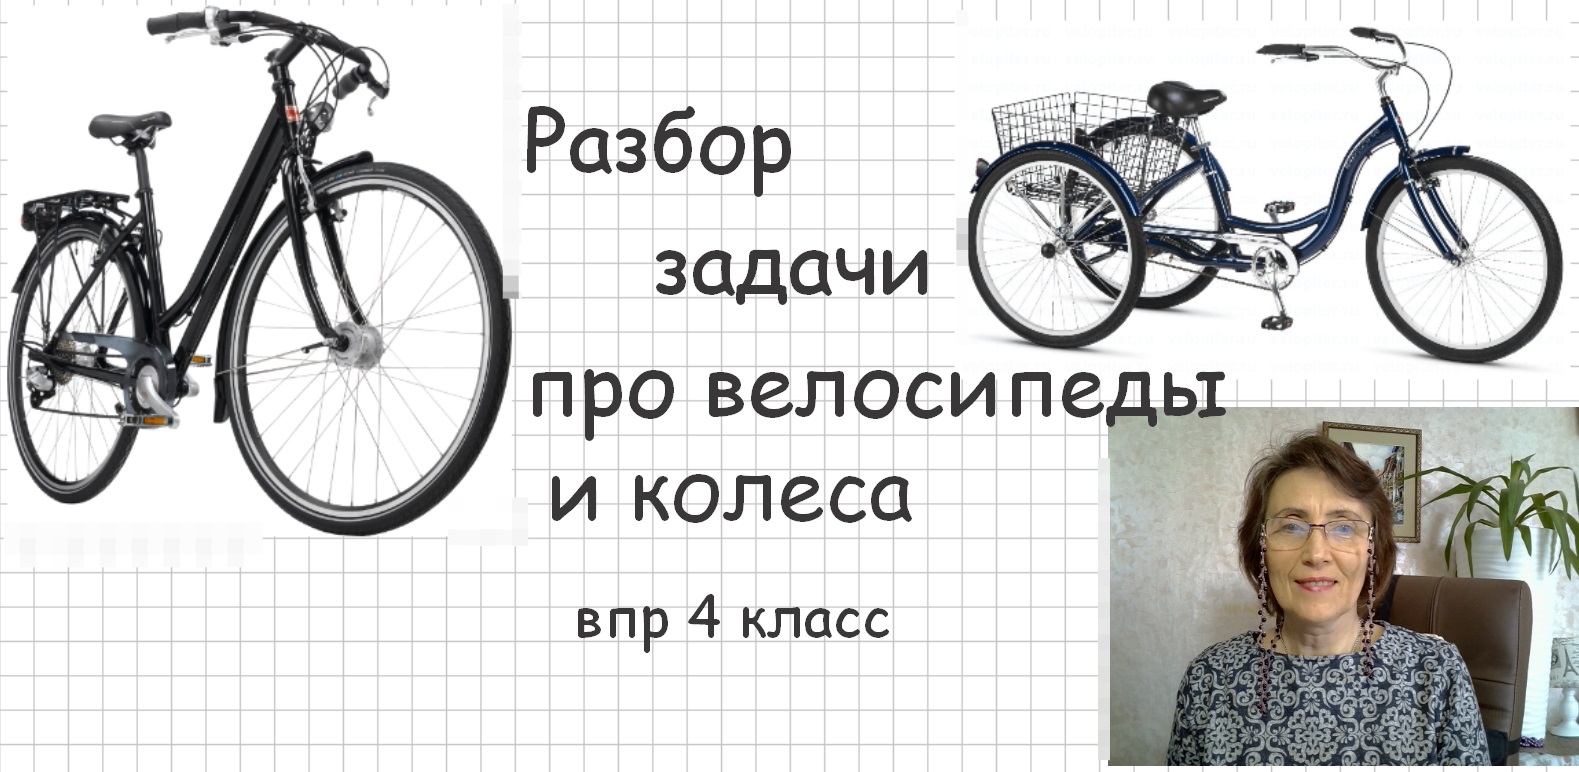 Велосипед найти слова. Задача про велосипеды и колеса. Задачи про велосипеды и колеса 4 класс. Загадка про велосипед. Задача про велосипеды ВПР 4 класс.